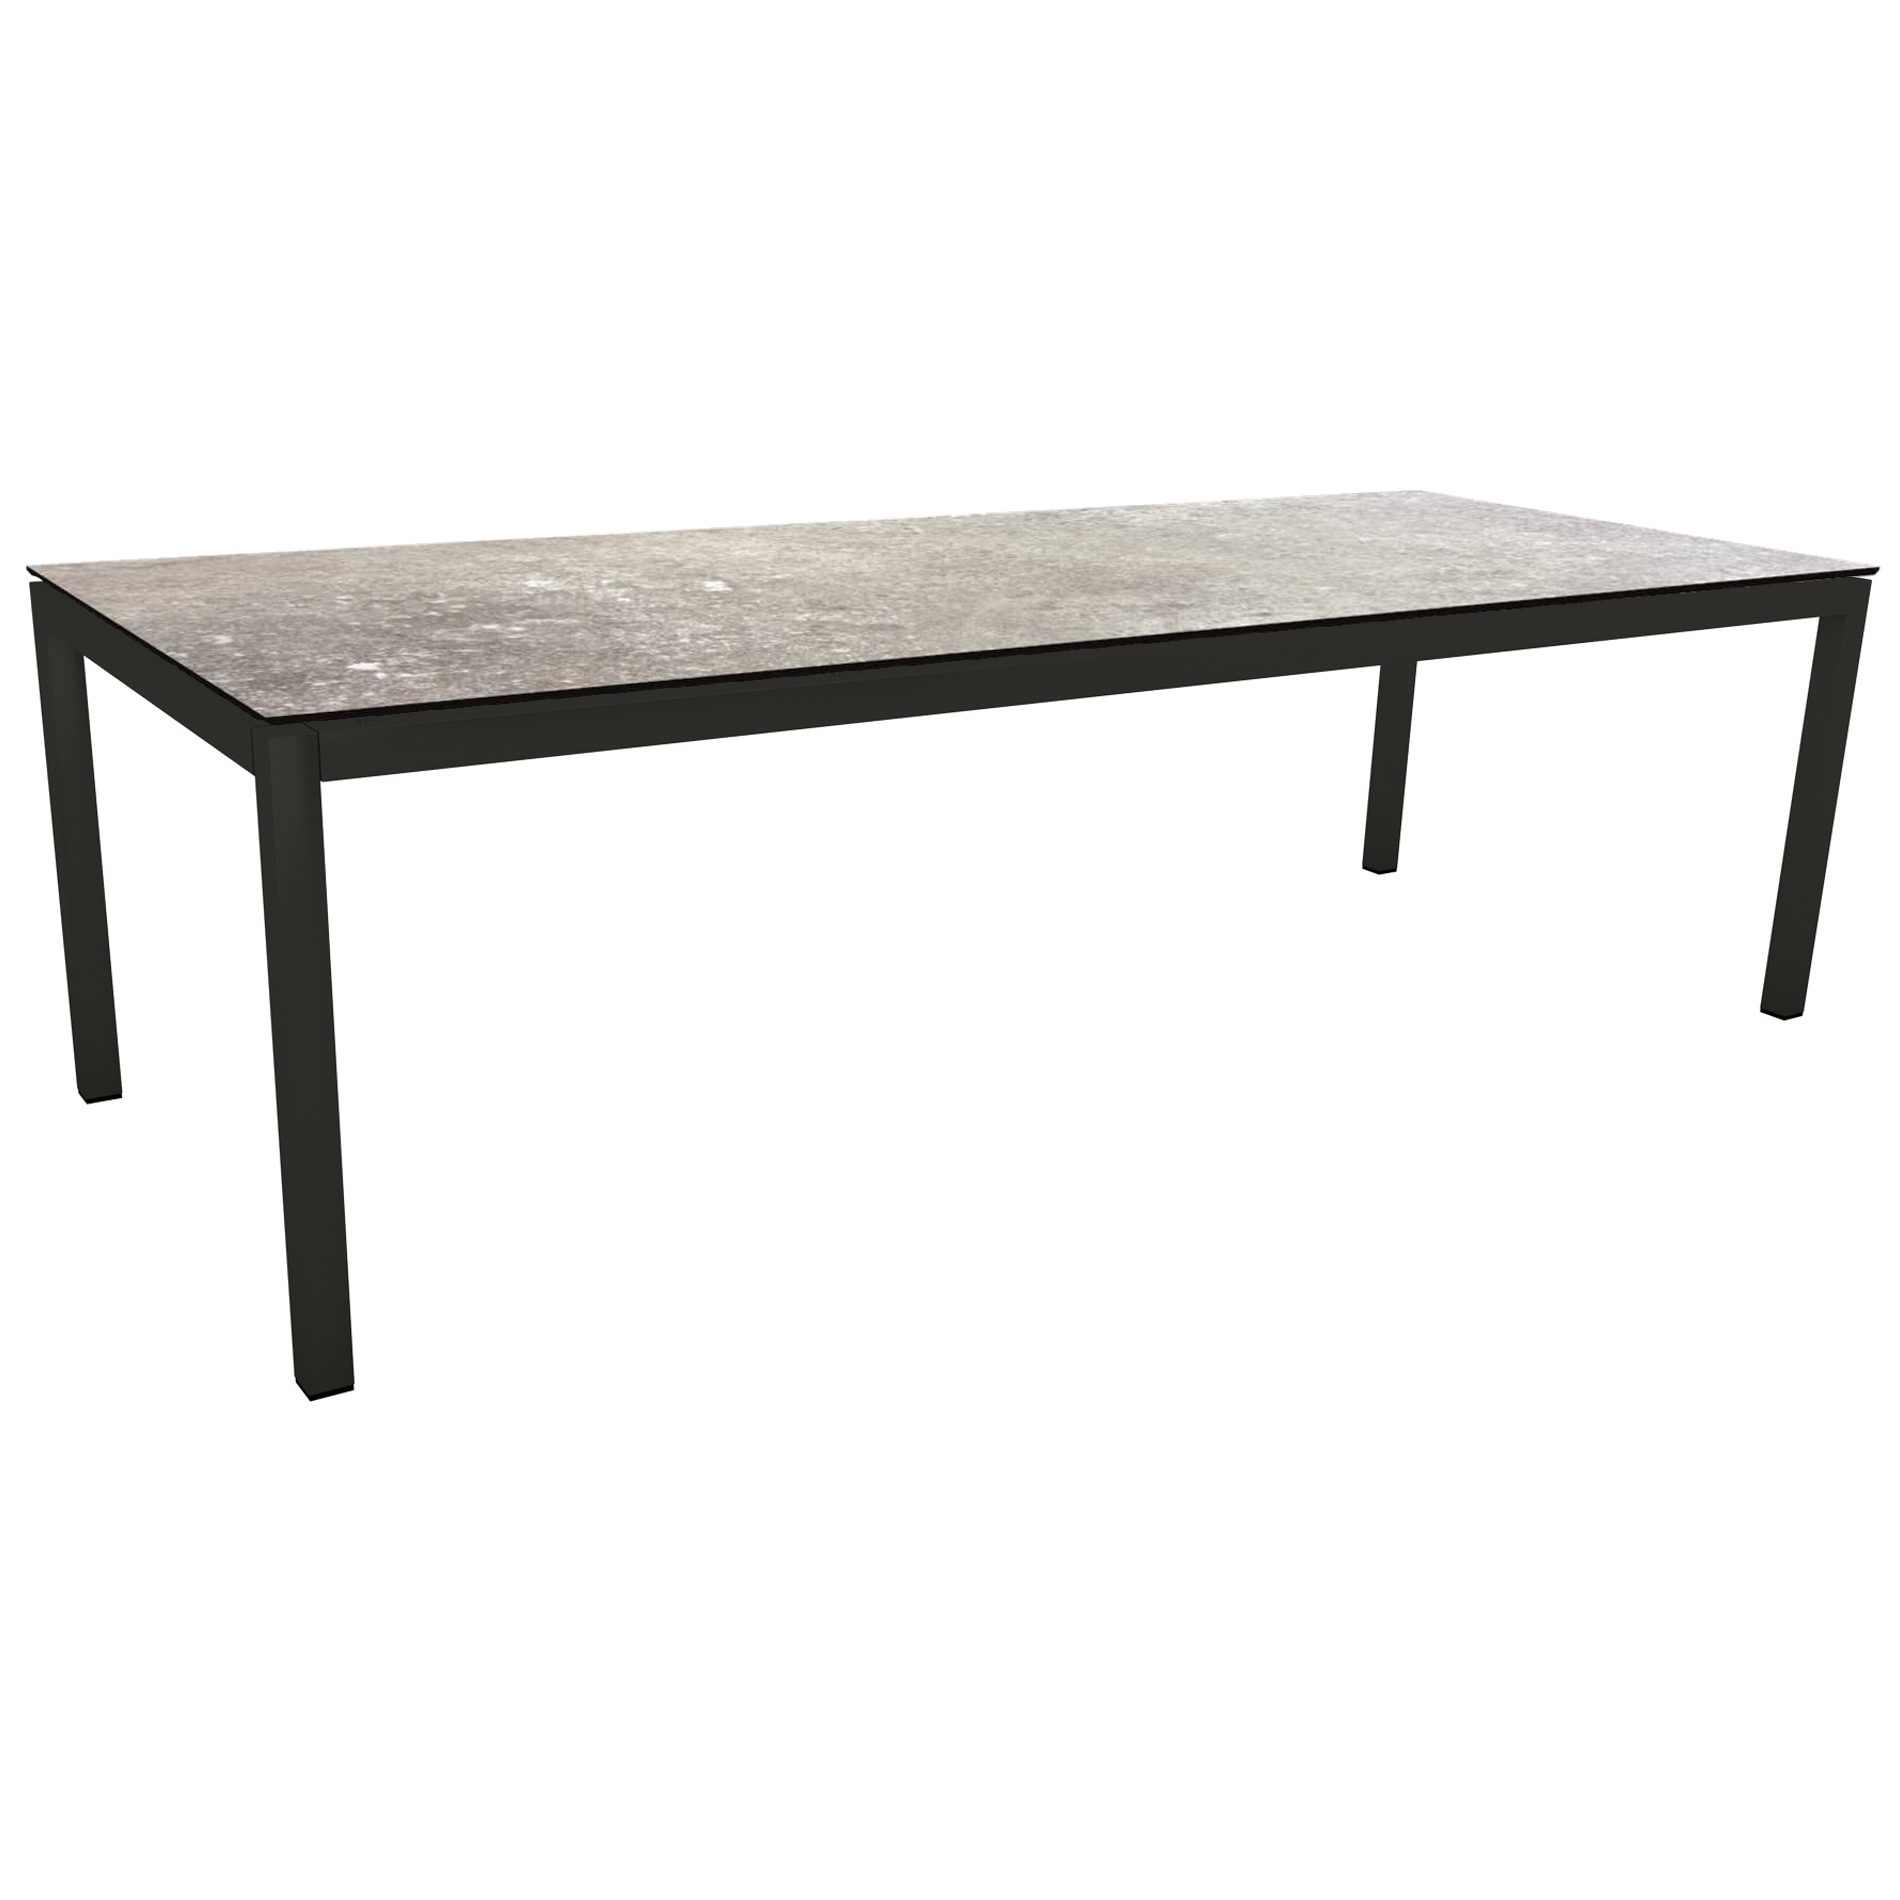 Stern Gartentisch, Gestell Aluminium schwarz matt, Tischplatte HPL Vintage Stone, 250x100cm